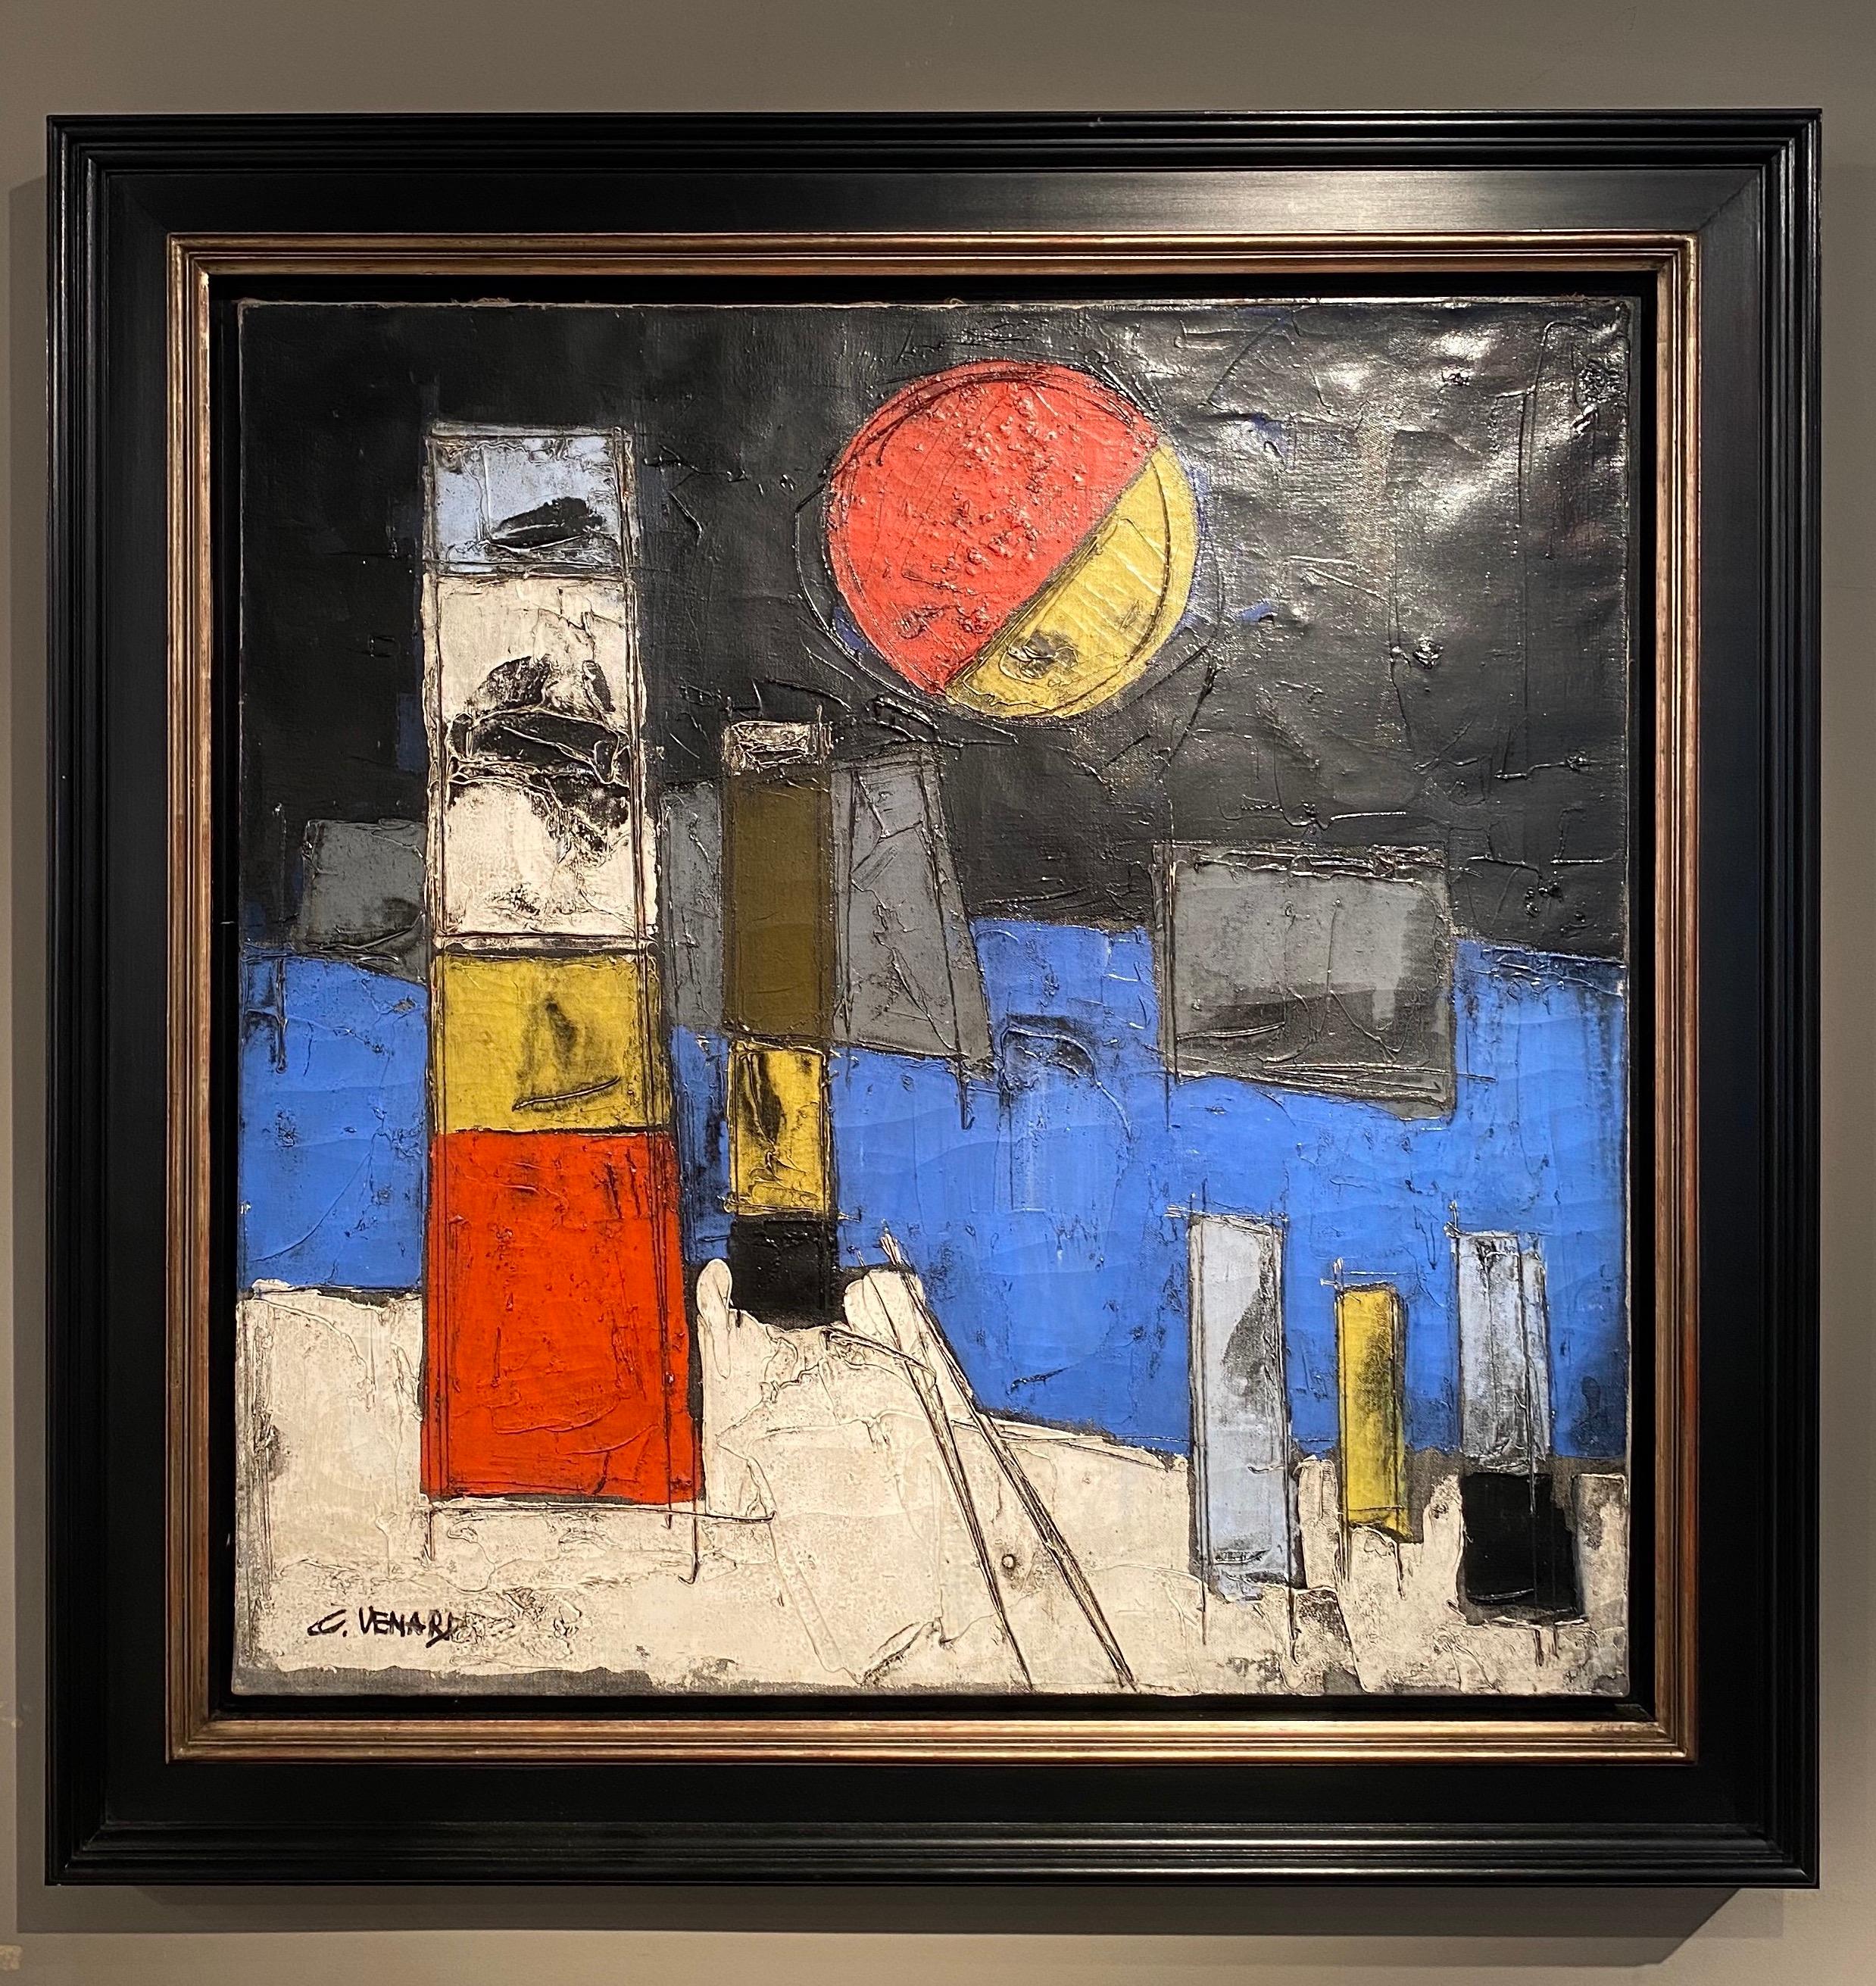 Abstraktes Landschaftsgemälde „Le Port“ von einem Hafen, einem Boot, einem Leuchtturm und einem Mond – Painting von Claude Vénard